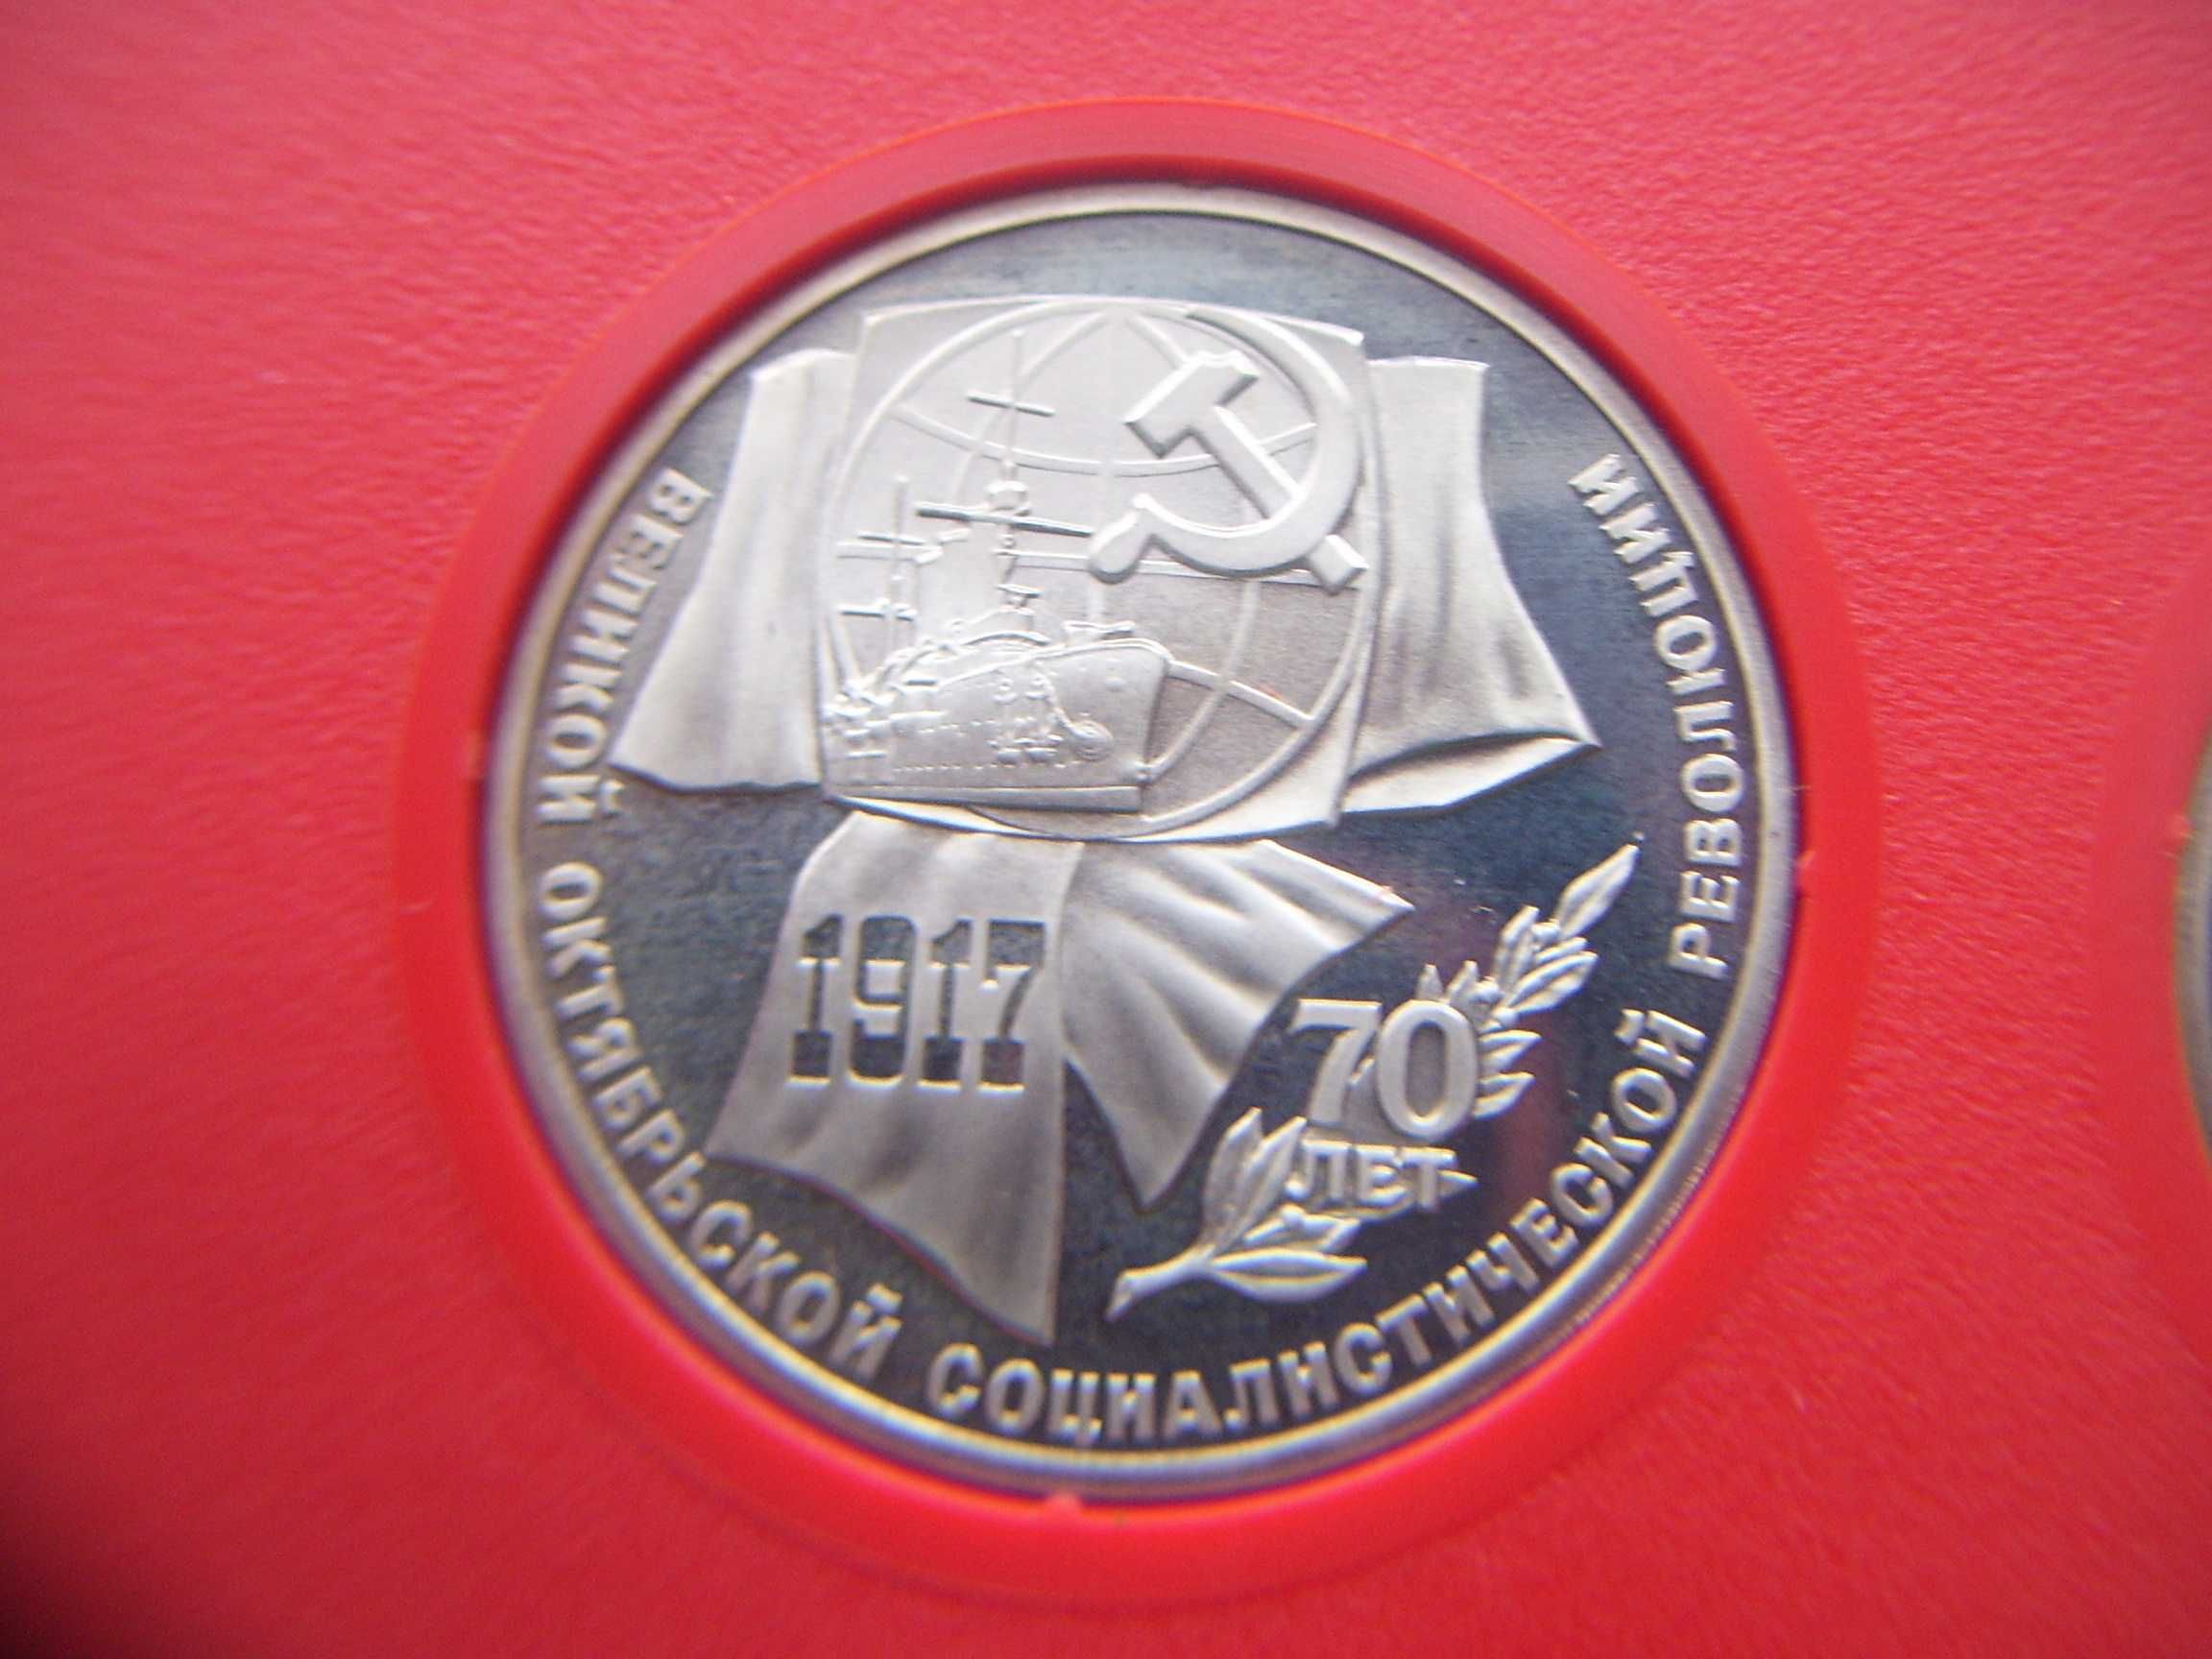 Stare monety Rosja zestaw 1987 lustrzanki Stan menniczy